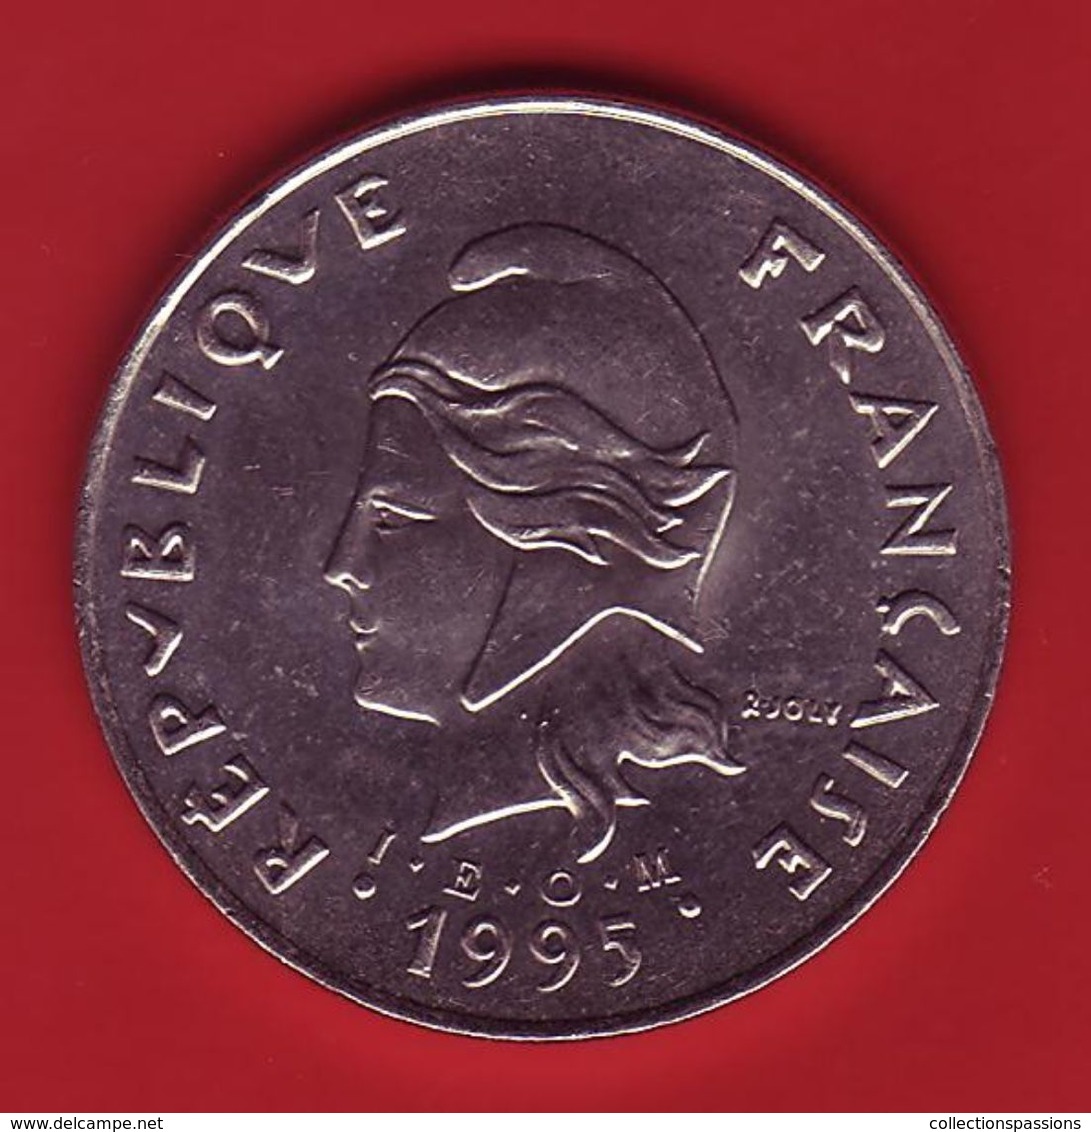 - POLYNESIE FRANCAISE - 50 Francs - 1995 - - Polinesia Francesa